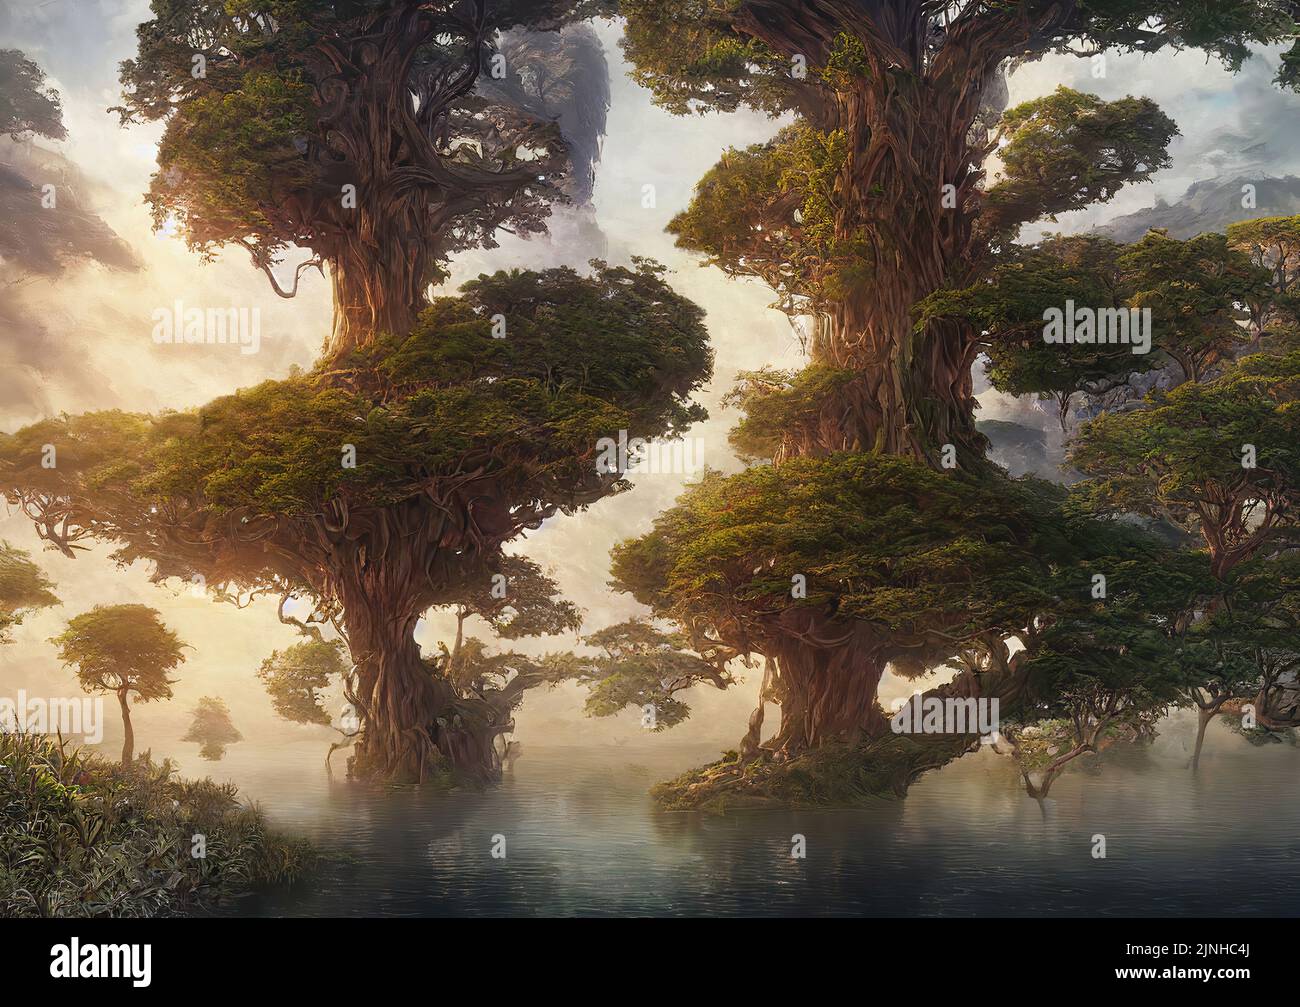 3d rendering di una bellissima terra fantasy surreale con alberi giganti che crescono in mezzo al lago circondato da montagne Foto Stock